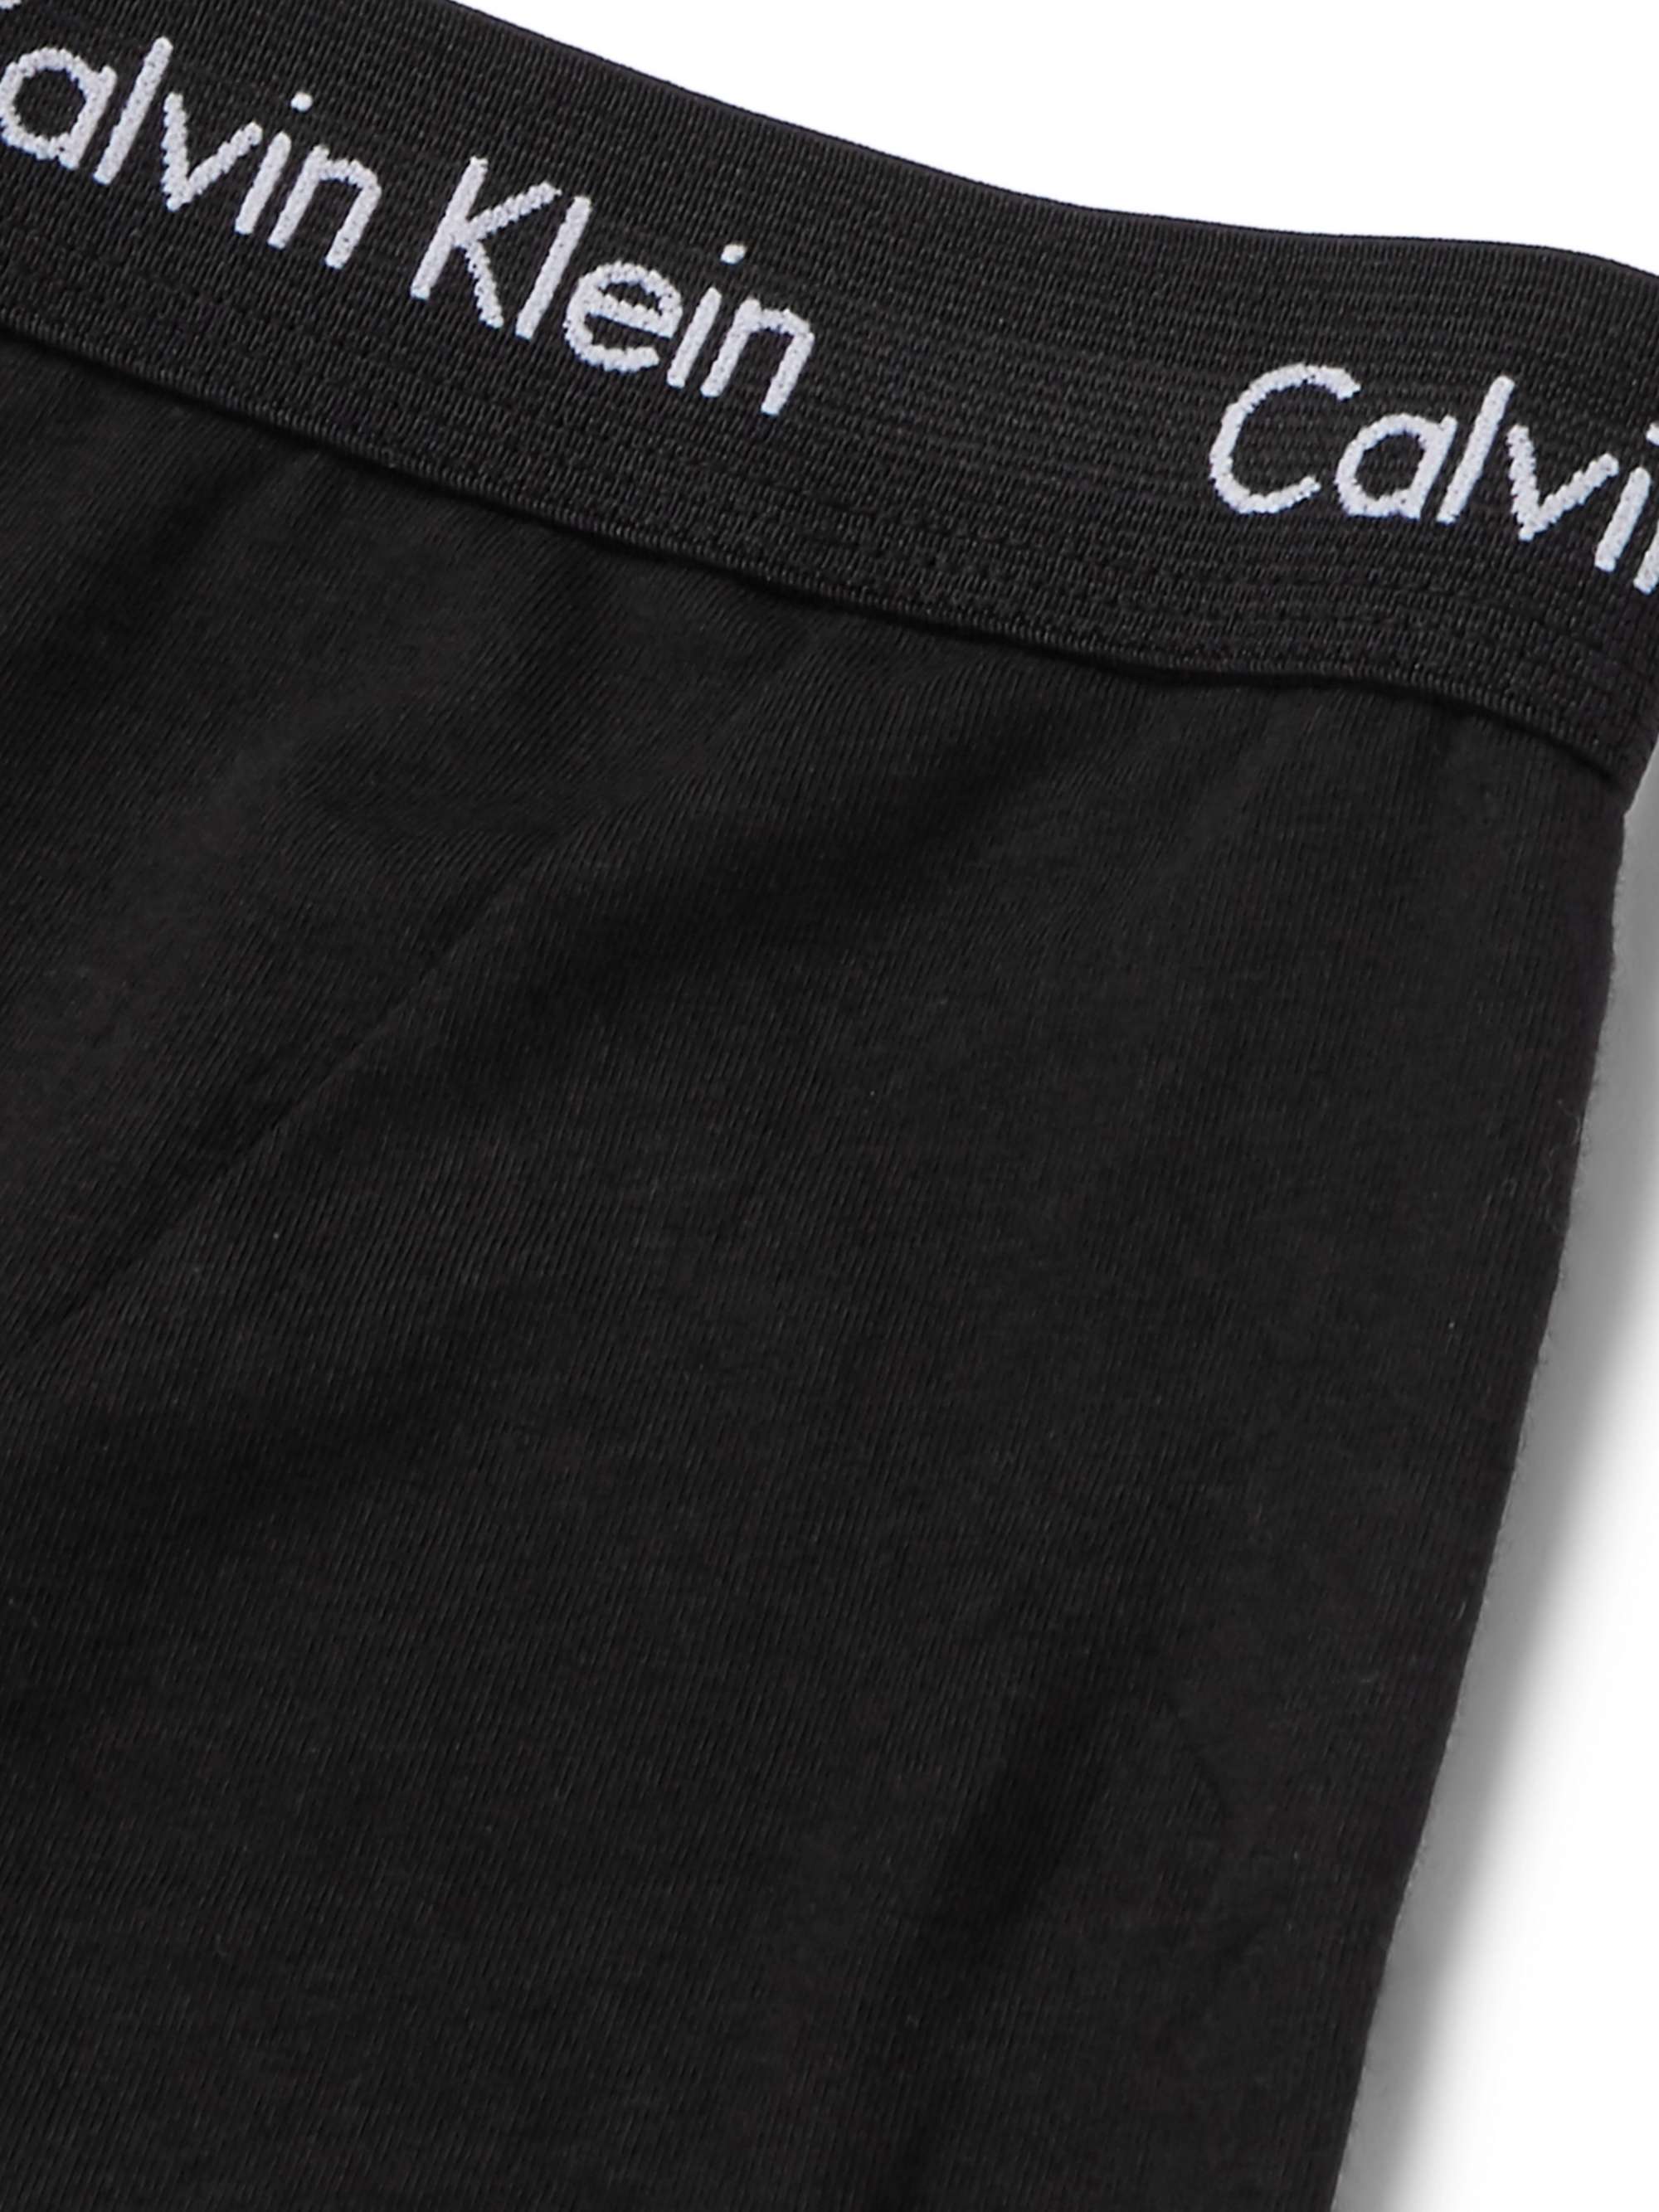 Black Pack of three cotton-blend briefs, Calvin Klein Underwear